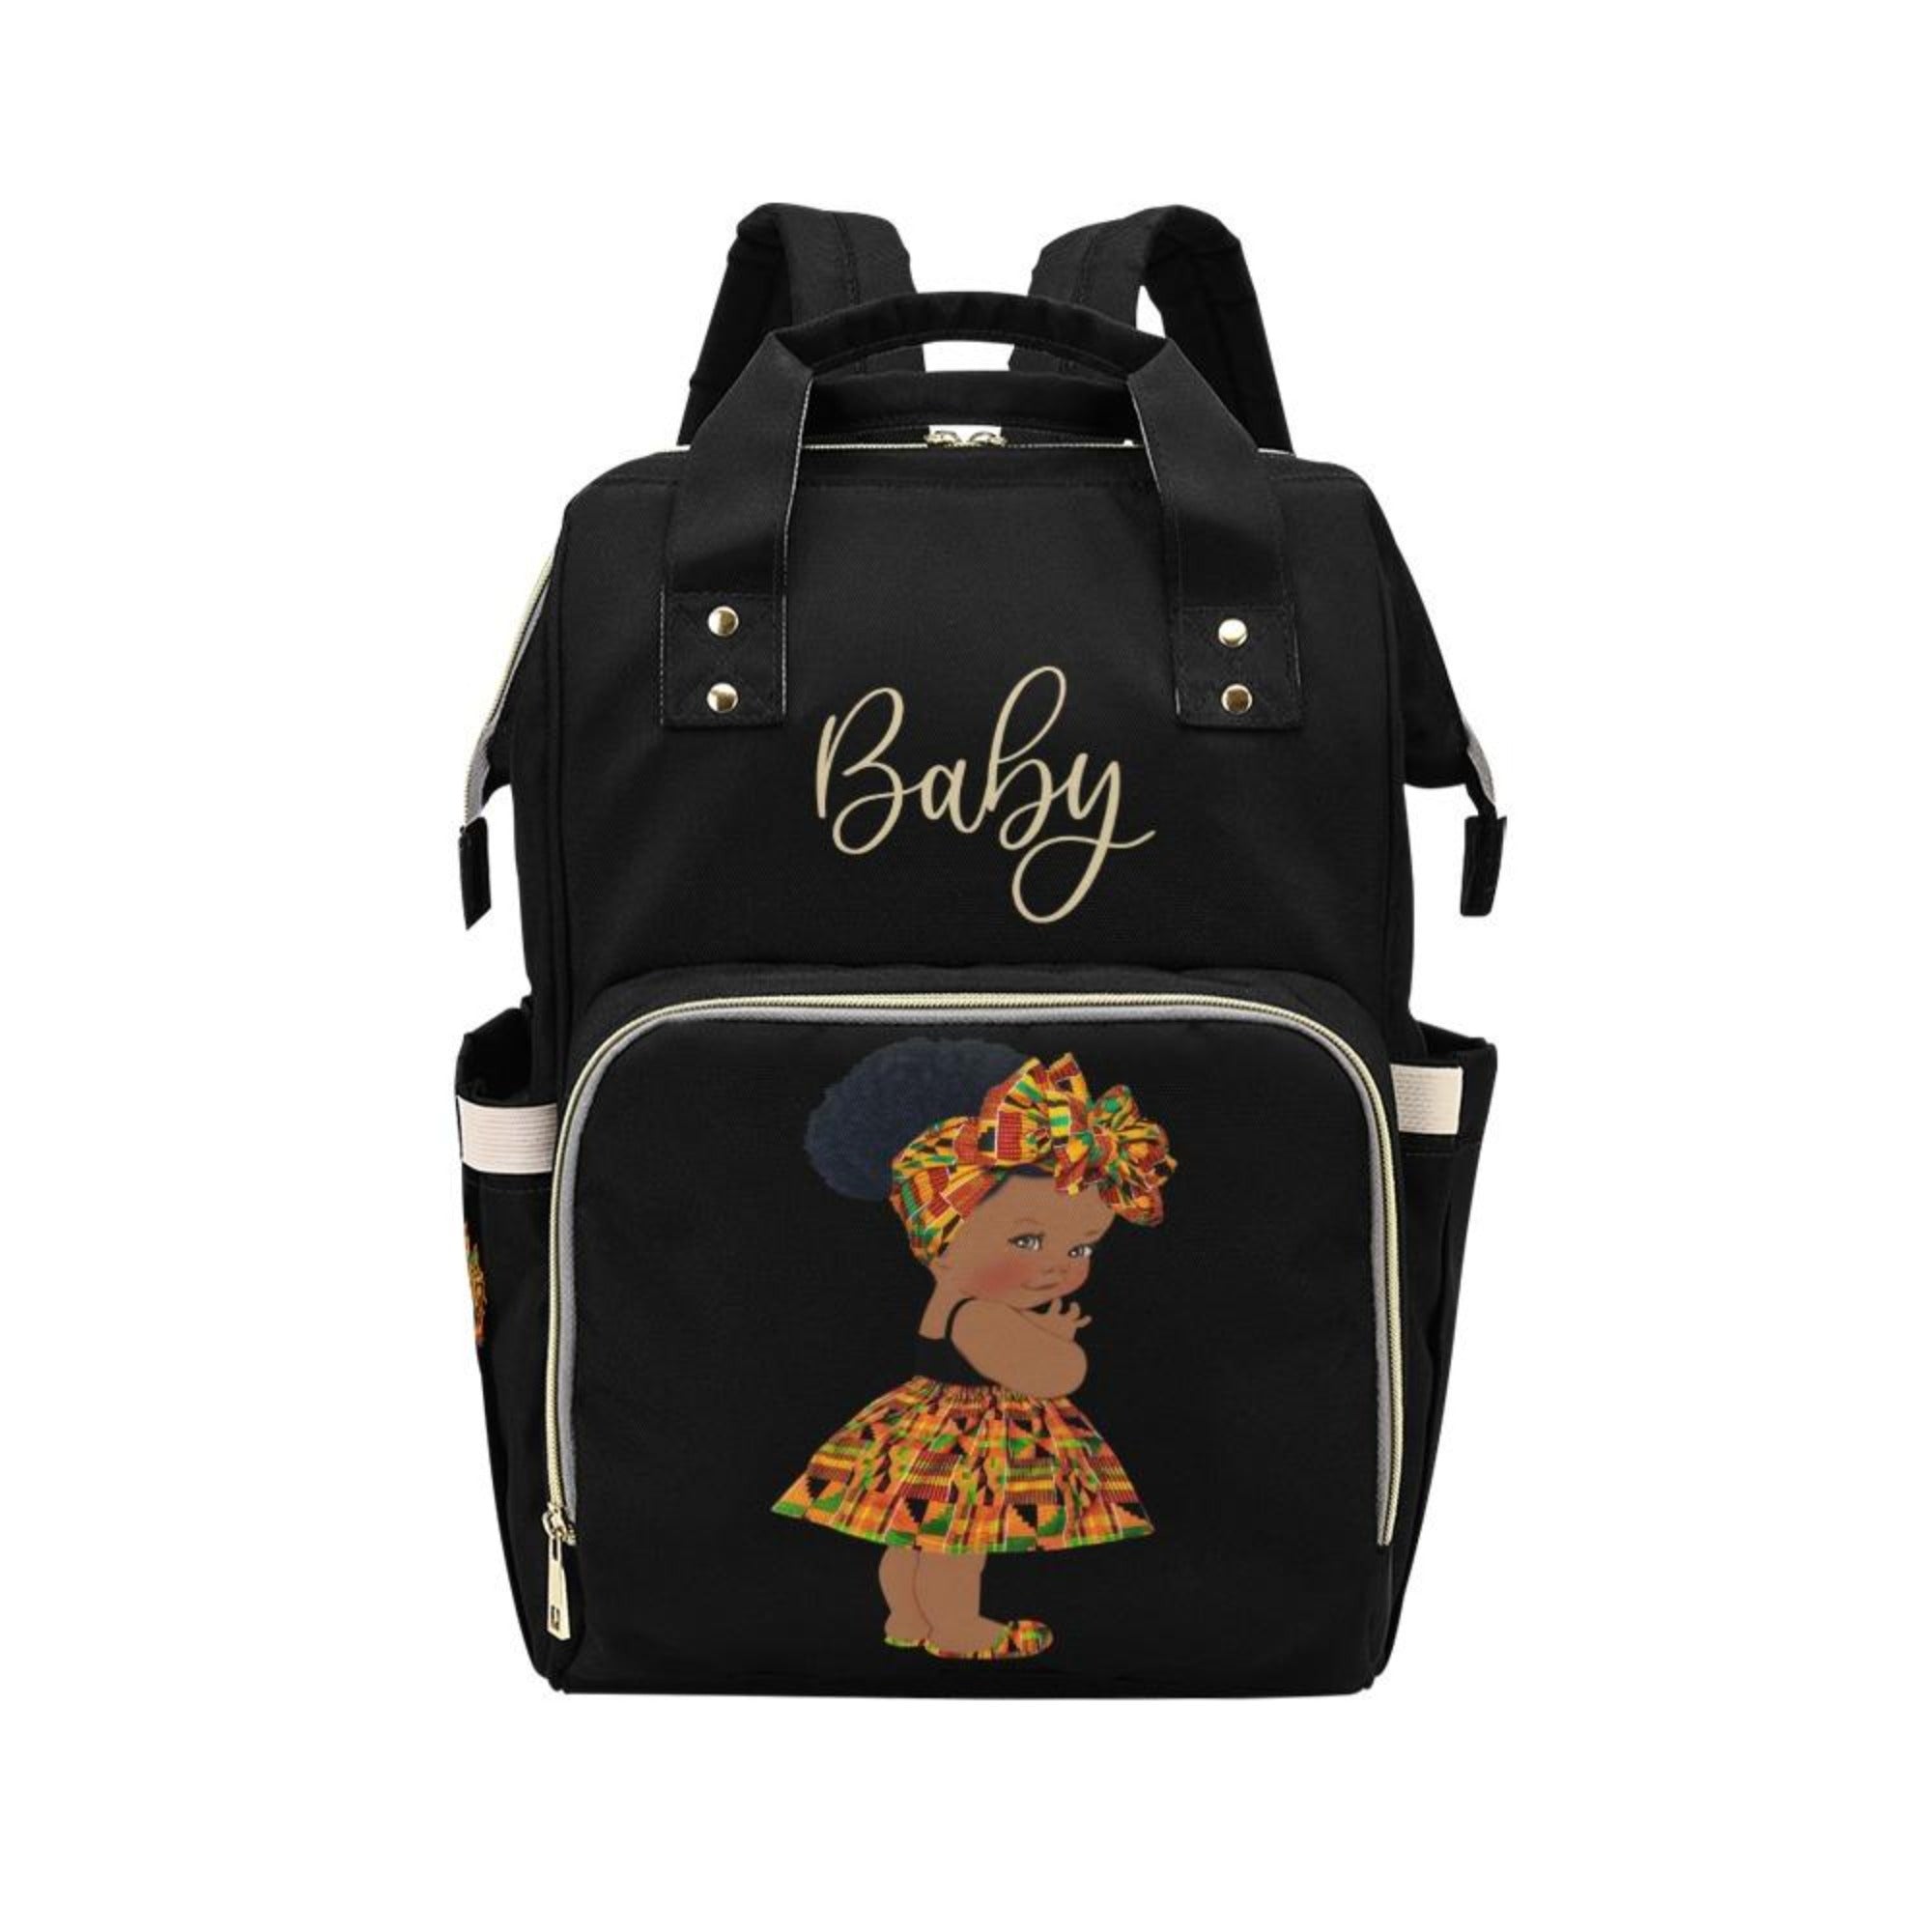 Designer Diaper Bag - Ethnic African American Baby Girl - Waterproof Black Multi-Function Backpack